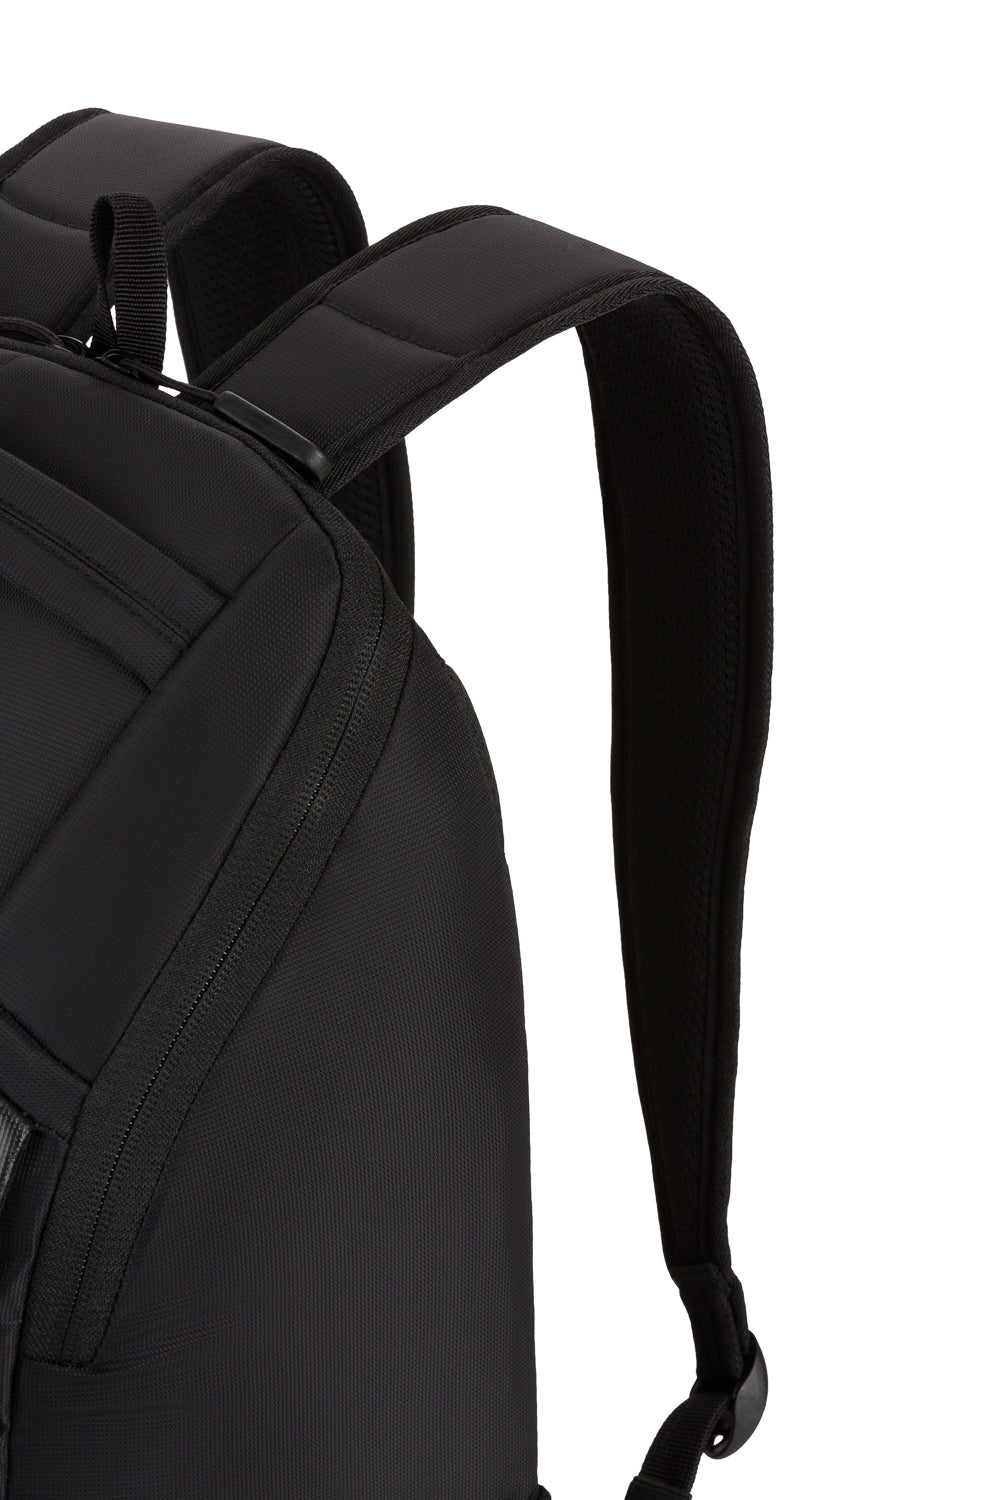 SwissGear 8117 15" Laptop Backpack